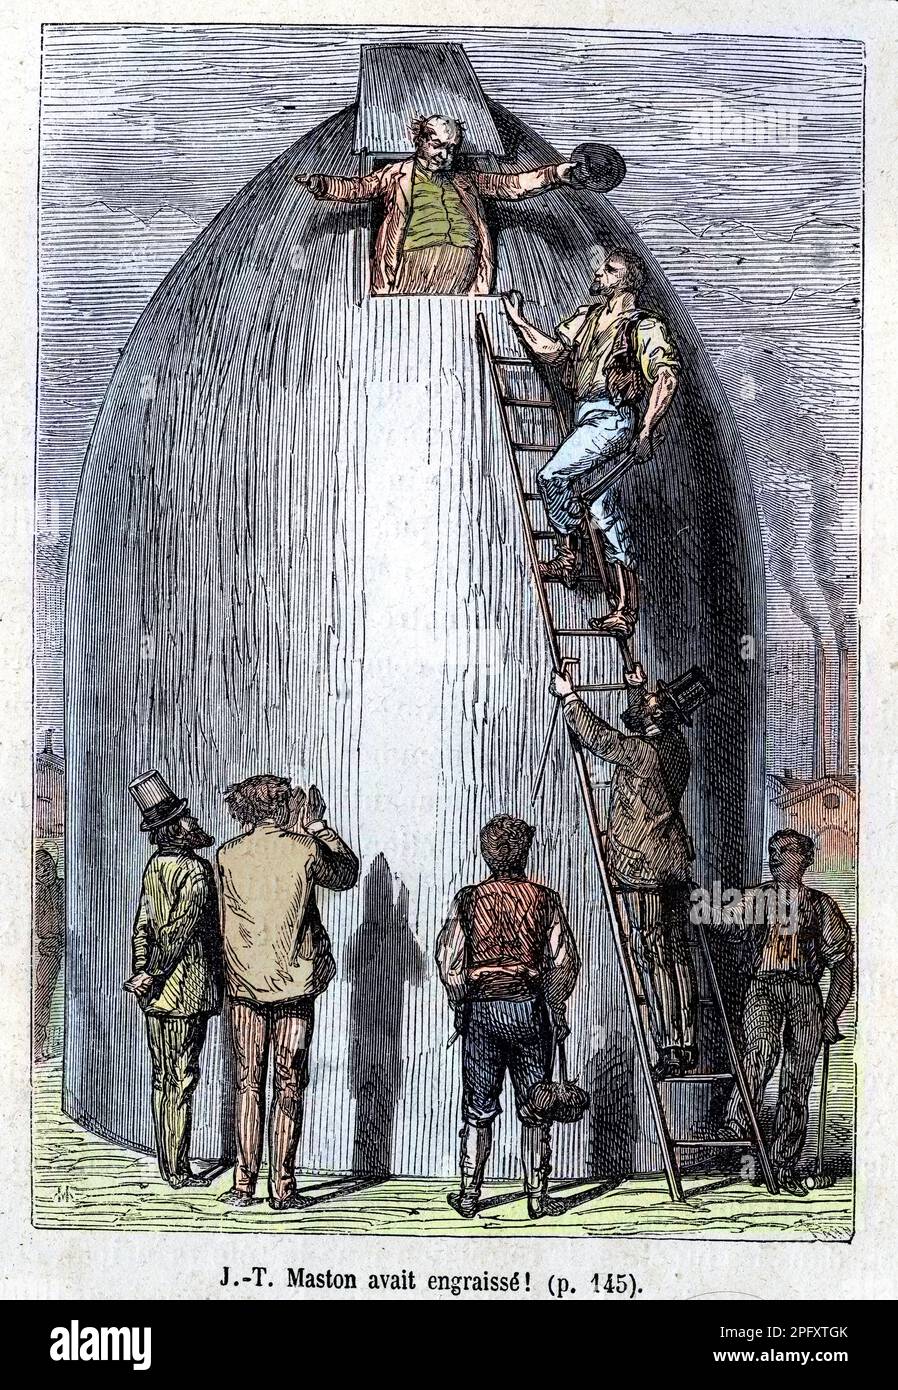 Maston avait engraissé - in 'De la terre à la lune' de Jules Verne, 1872. Ausgaben Hetzel. Illustration aus einer Ausgabe von Jules Verne aus dem 19. Jahrhundert von „Erde zum Mond“ Stockfoto